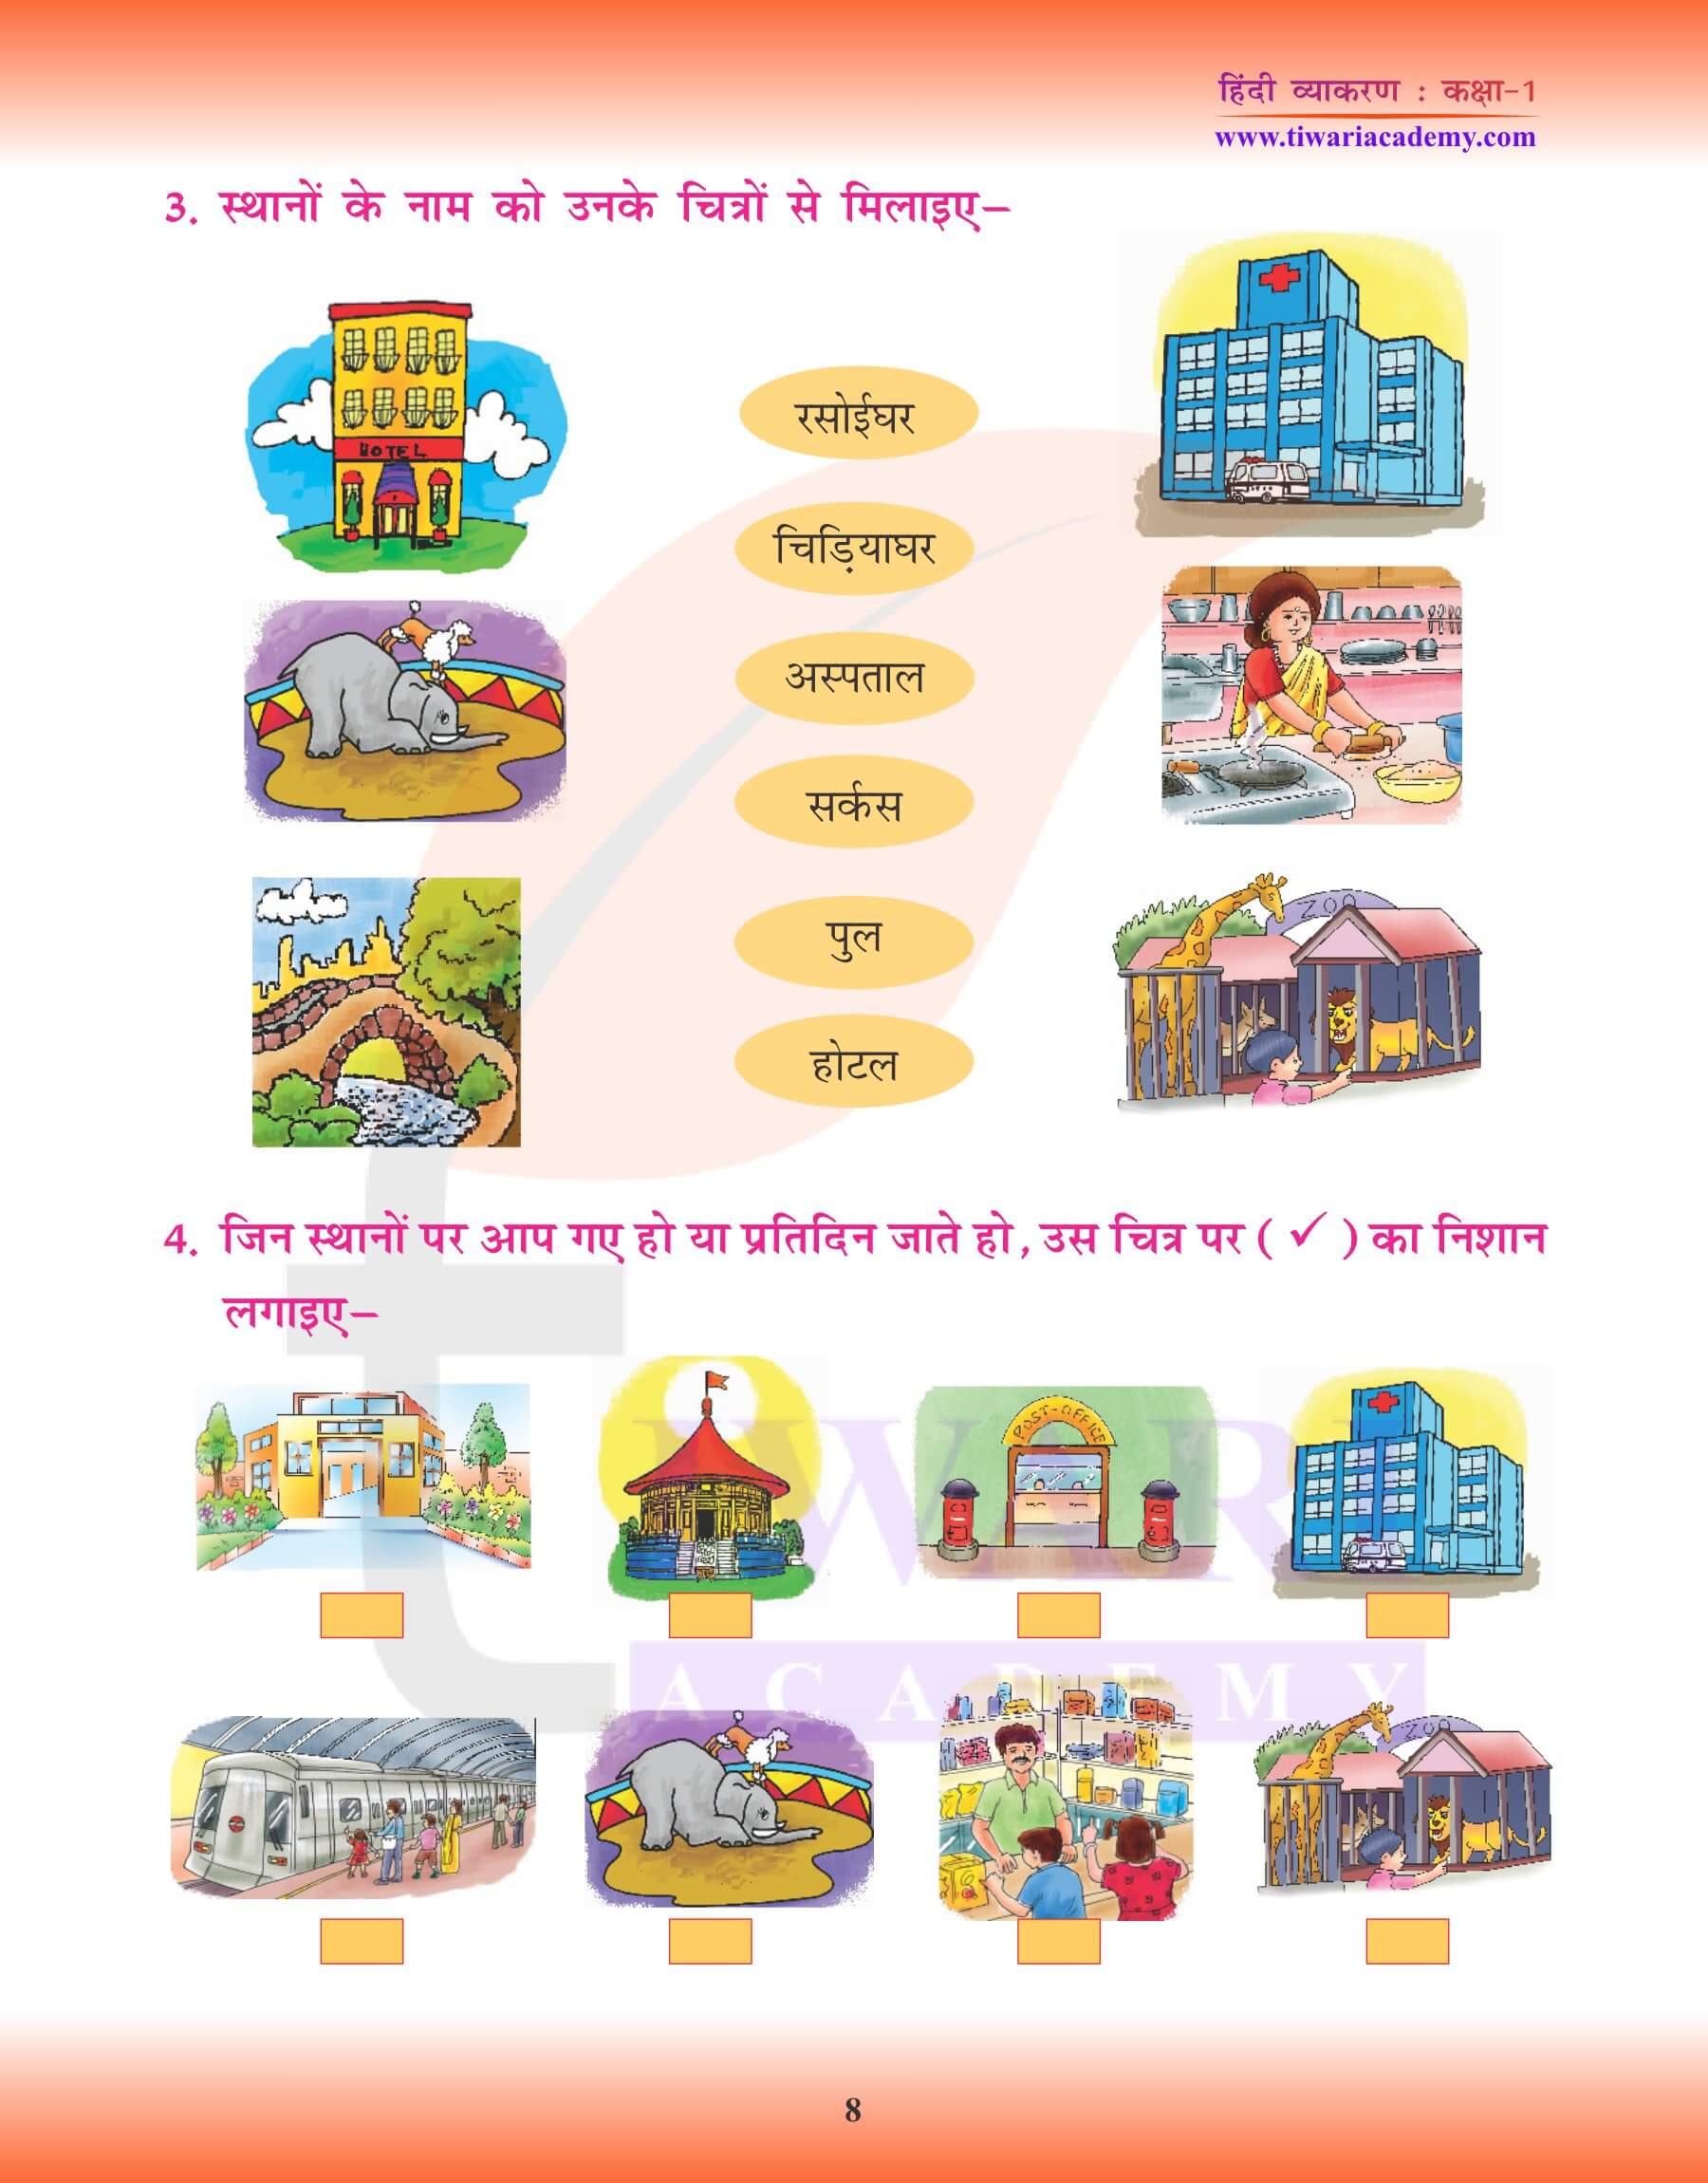 कक्षा 1 के लिए हिंदी व्याकरण में संज्ञा